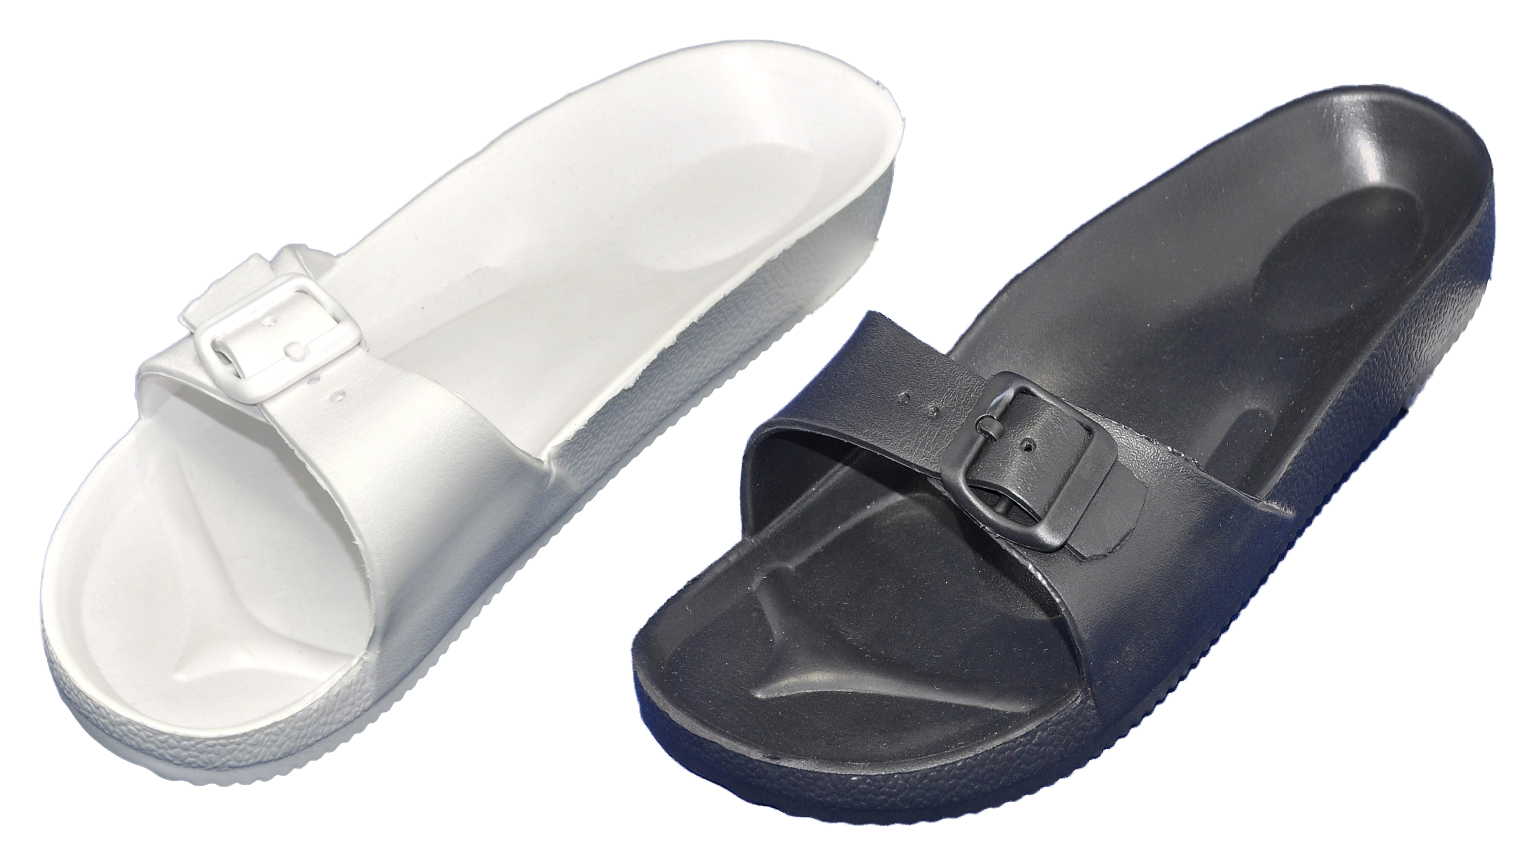 slide sandals in bulk